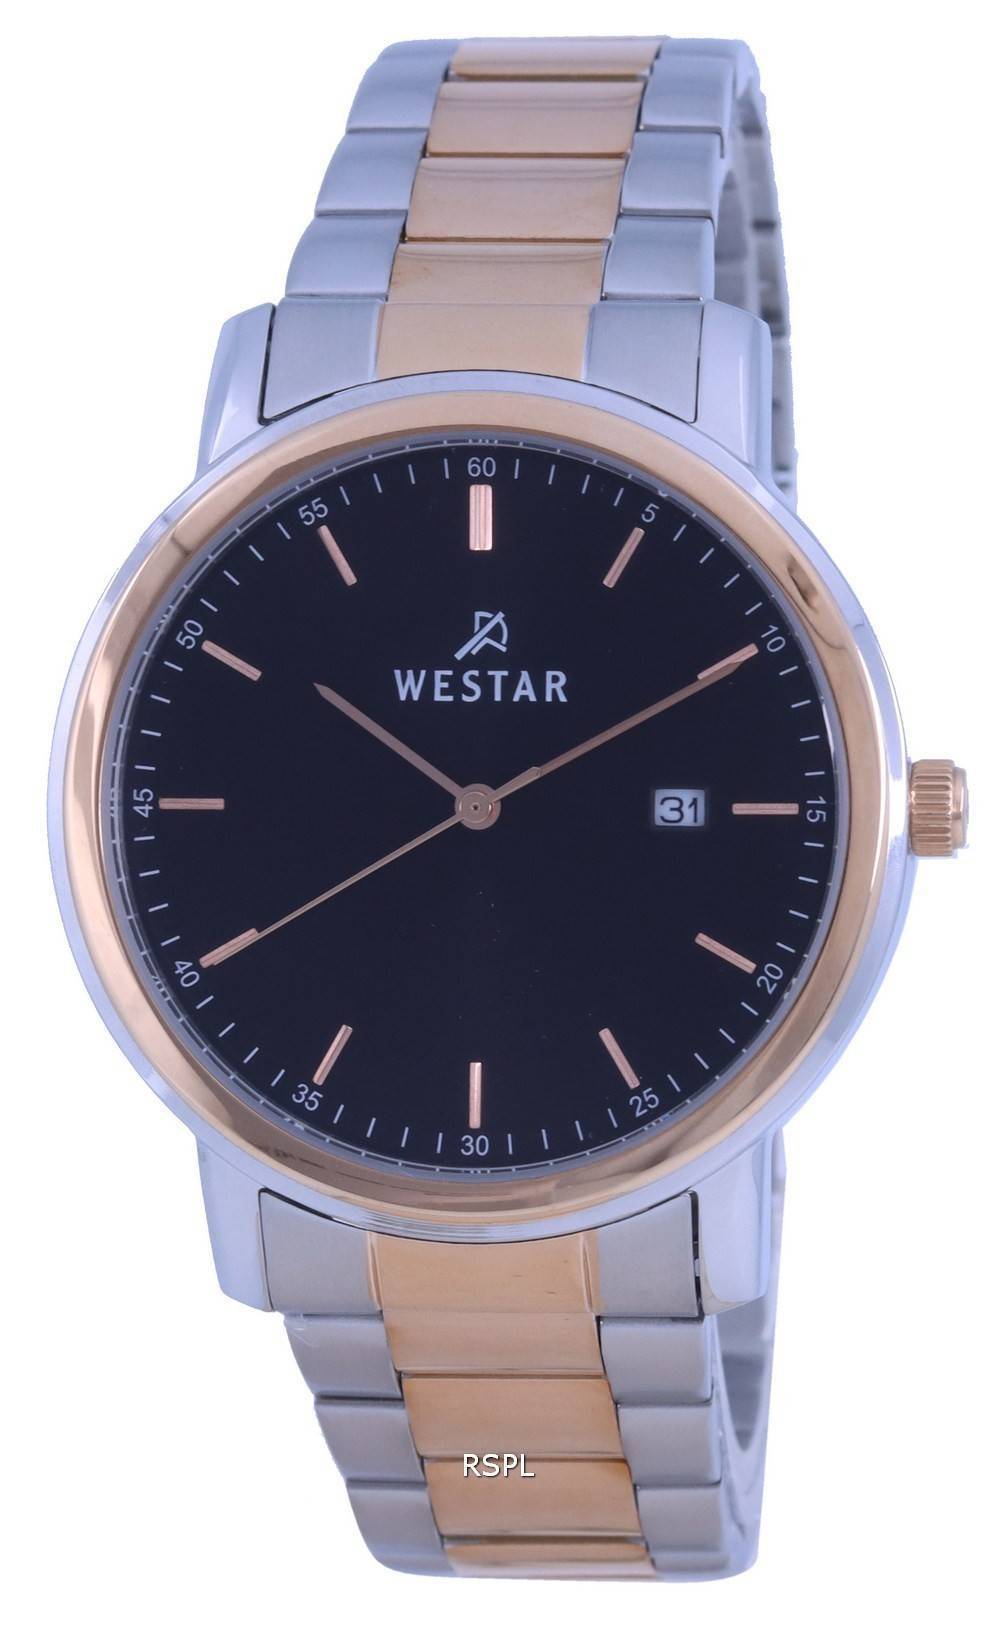 Westar musta kellotaulu kaksisÃ¤vyinen ruostumattomasta terÃ¤ksestÃ¤ valmistettu kvartsi 50245 SPN 603 miesten kello